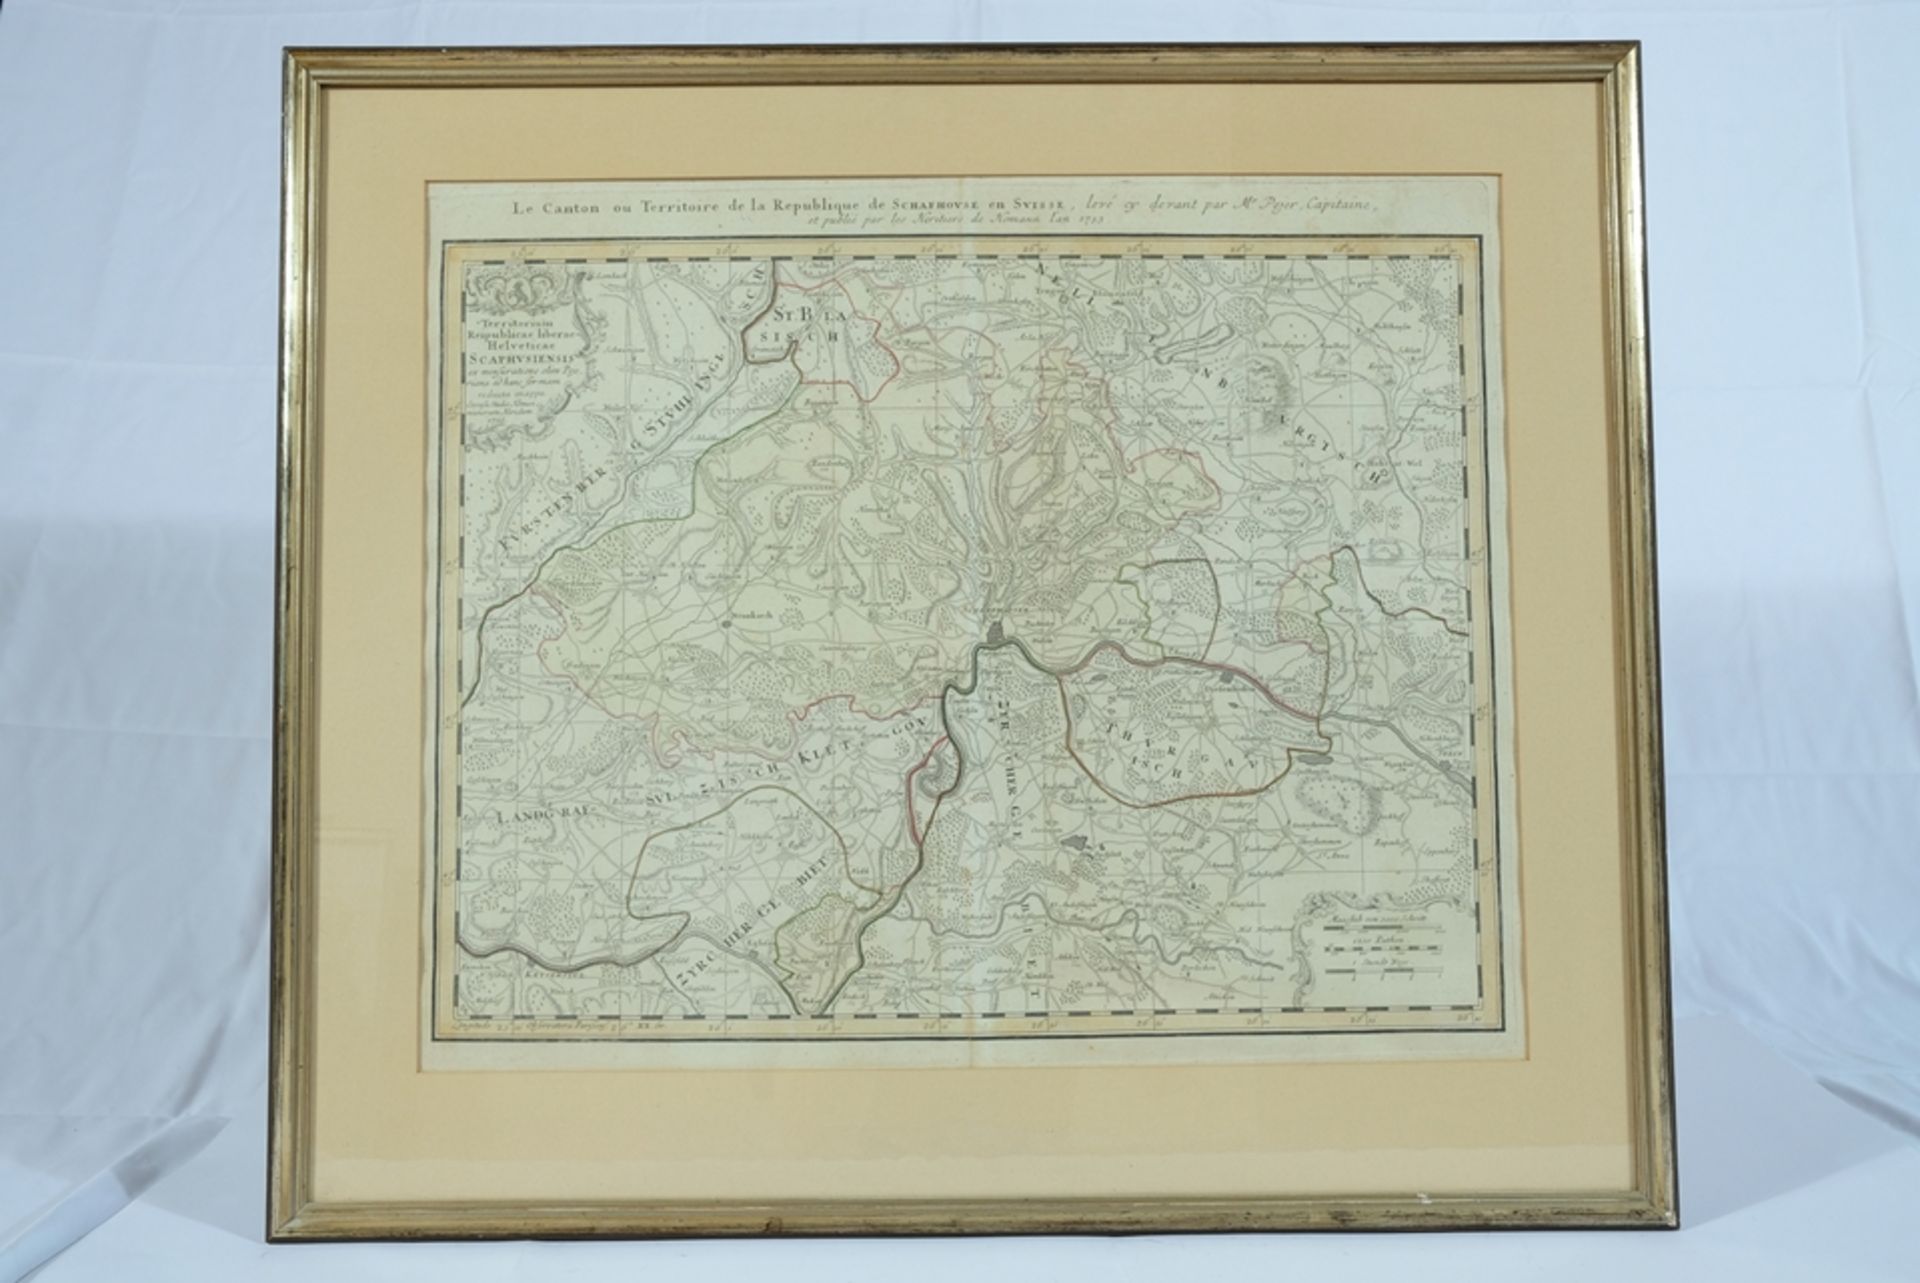 Schaffhausen, Landkarte von 1753, Kupferstich koloriert, 46 x 57 cm. - Bild 2 aus 3